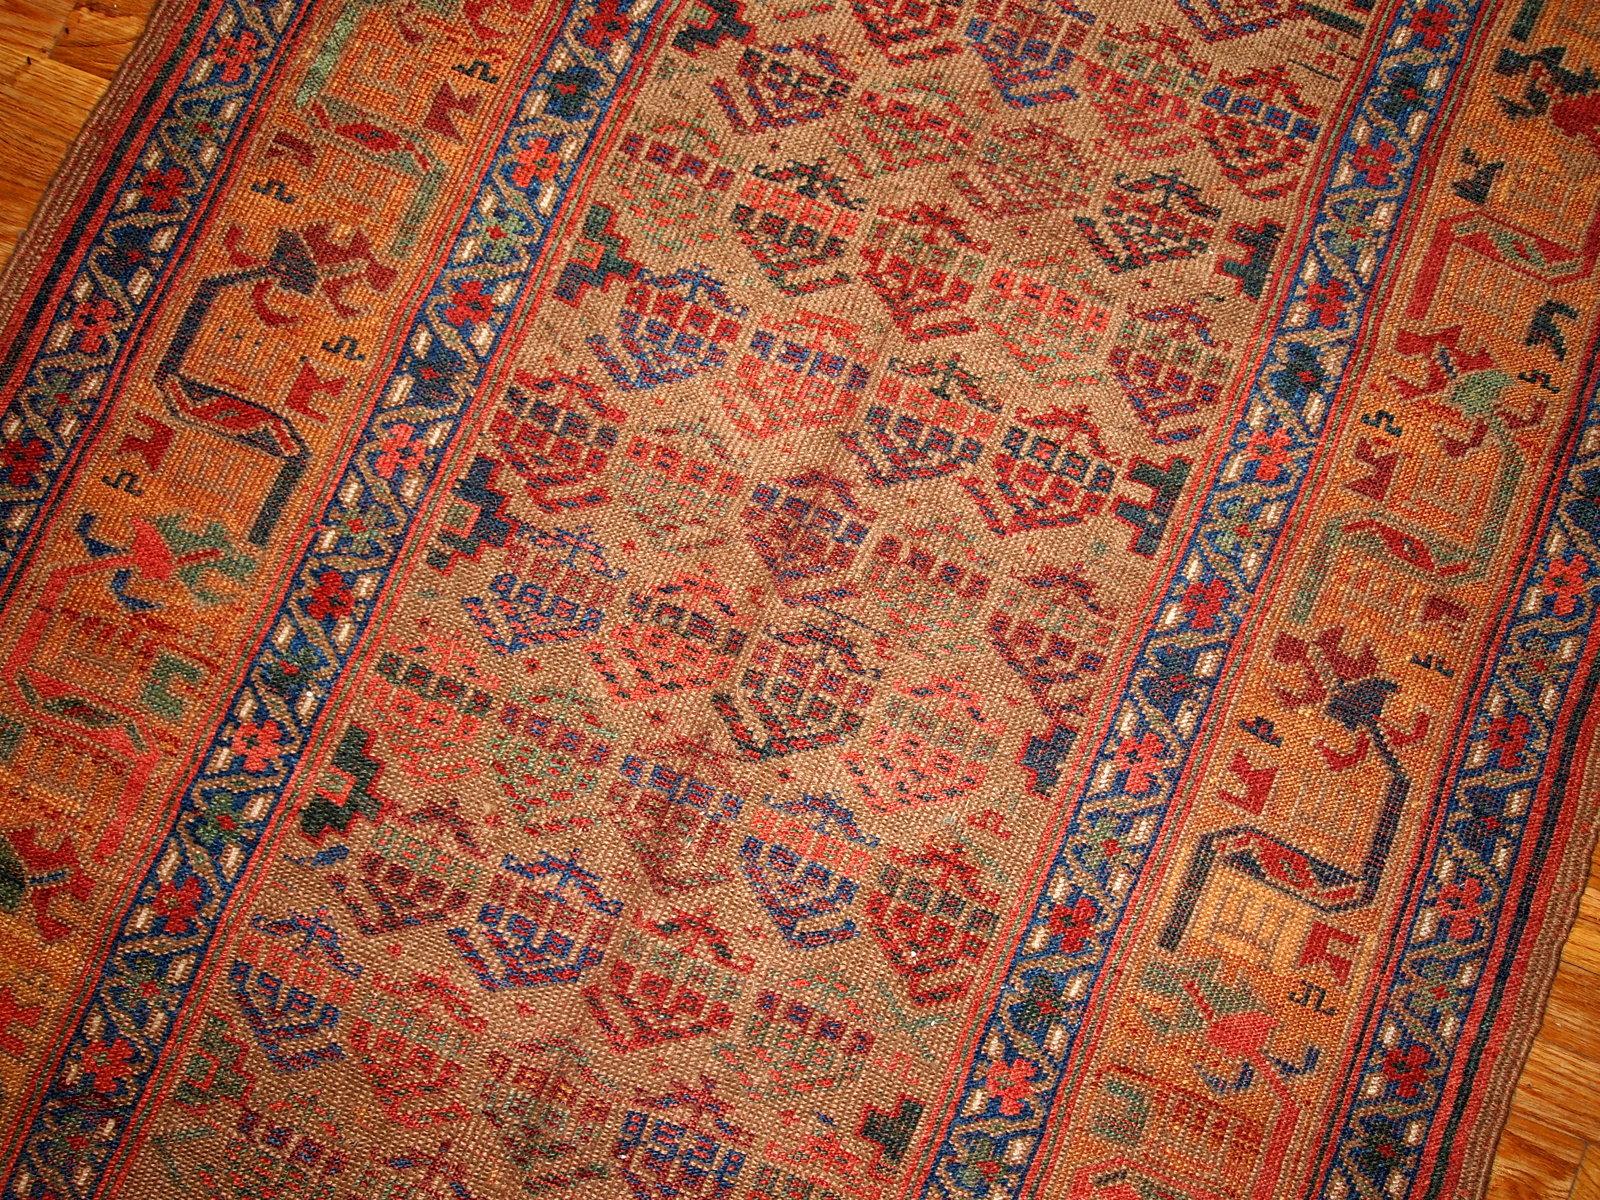 Antiker Teppich im kurdischen Stil in traditionellem Design, olivgrüne und gelbe Farbtöne. Der Teppich stammt aus dem Ende des 19. Jahrhunderts und ist in gutem Zustand.